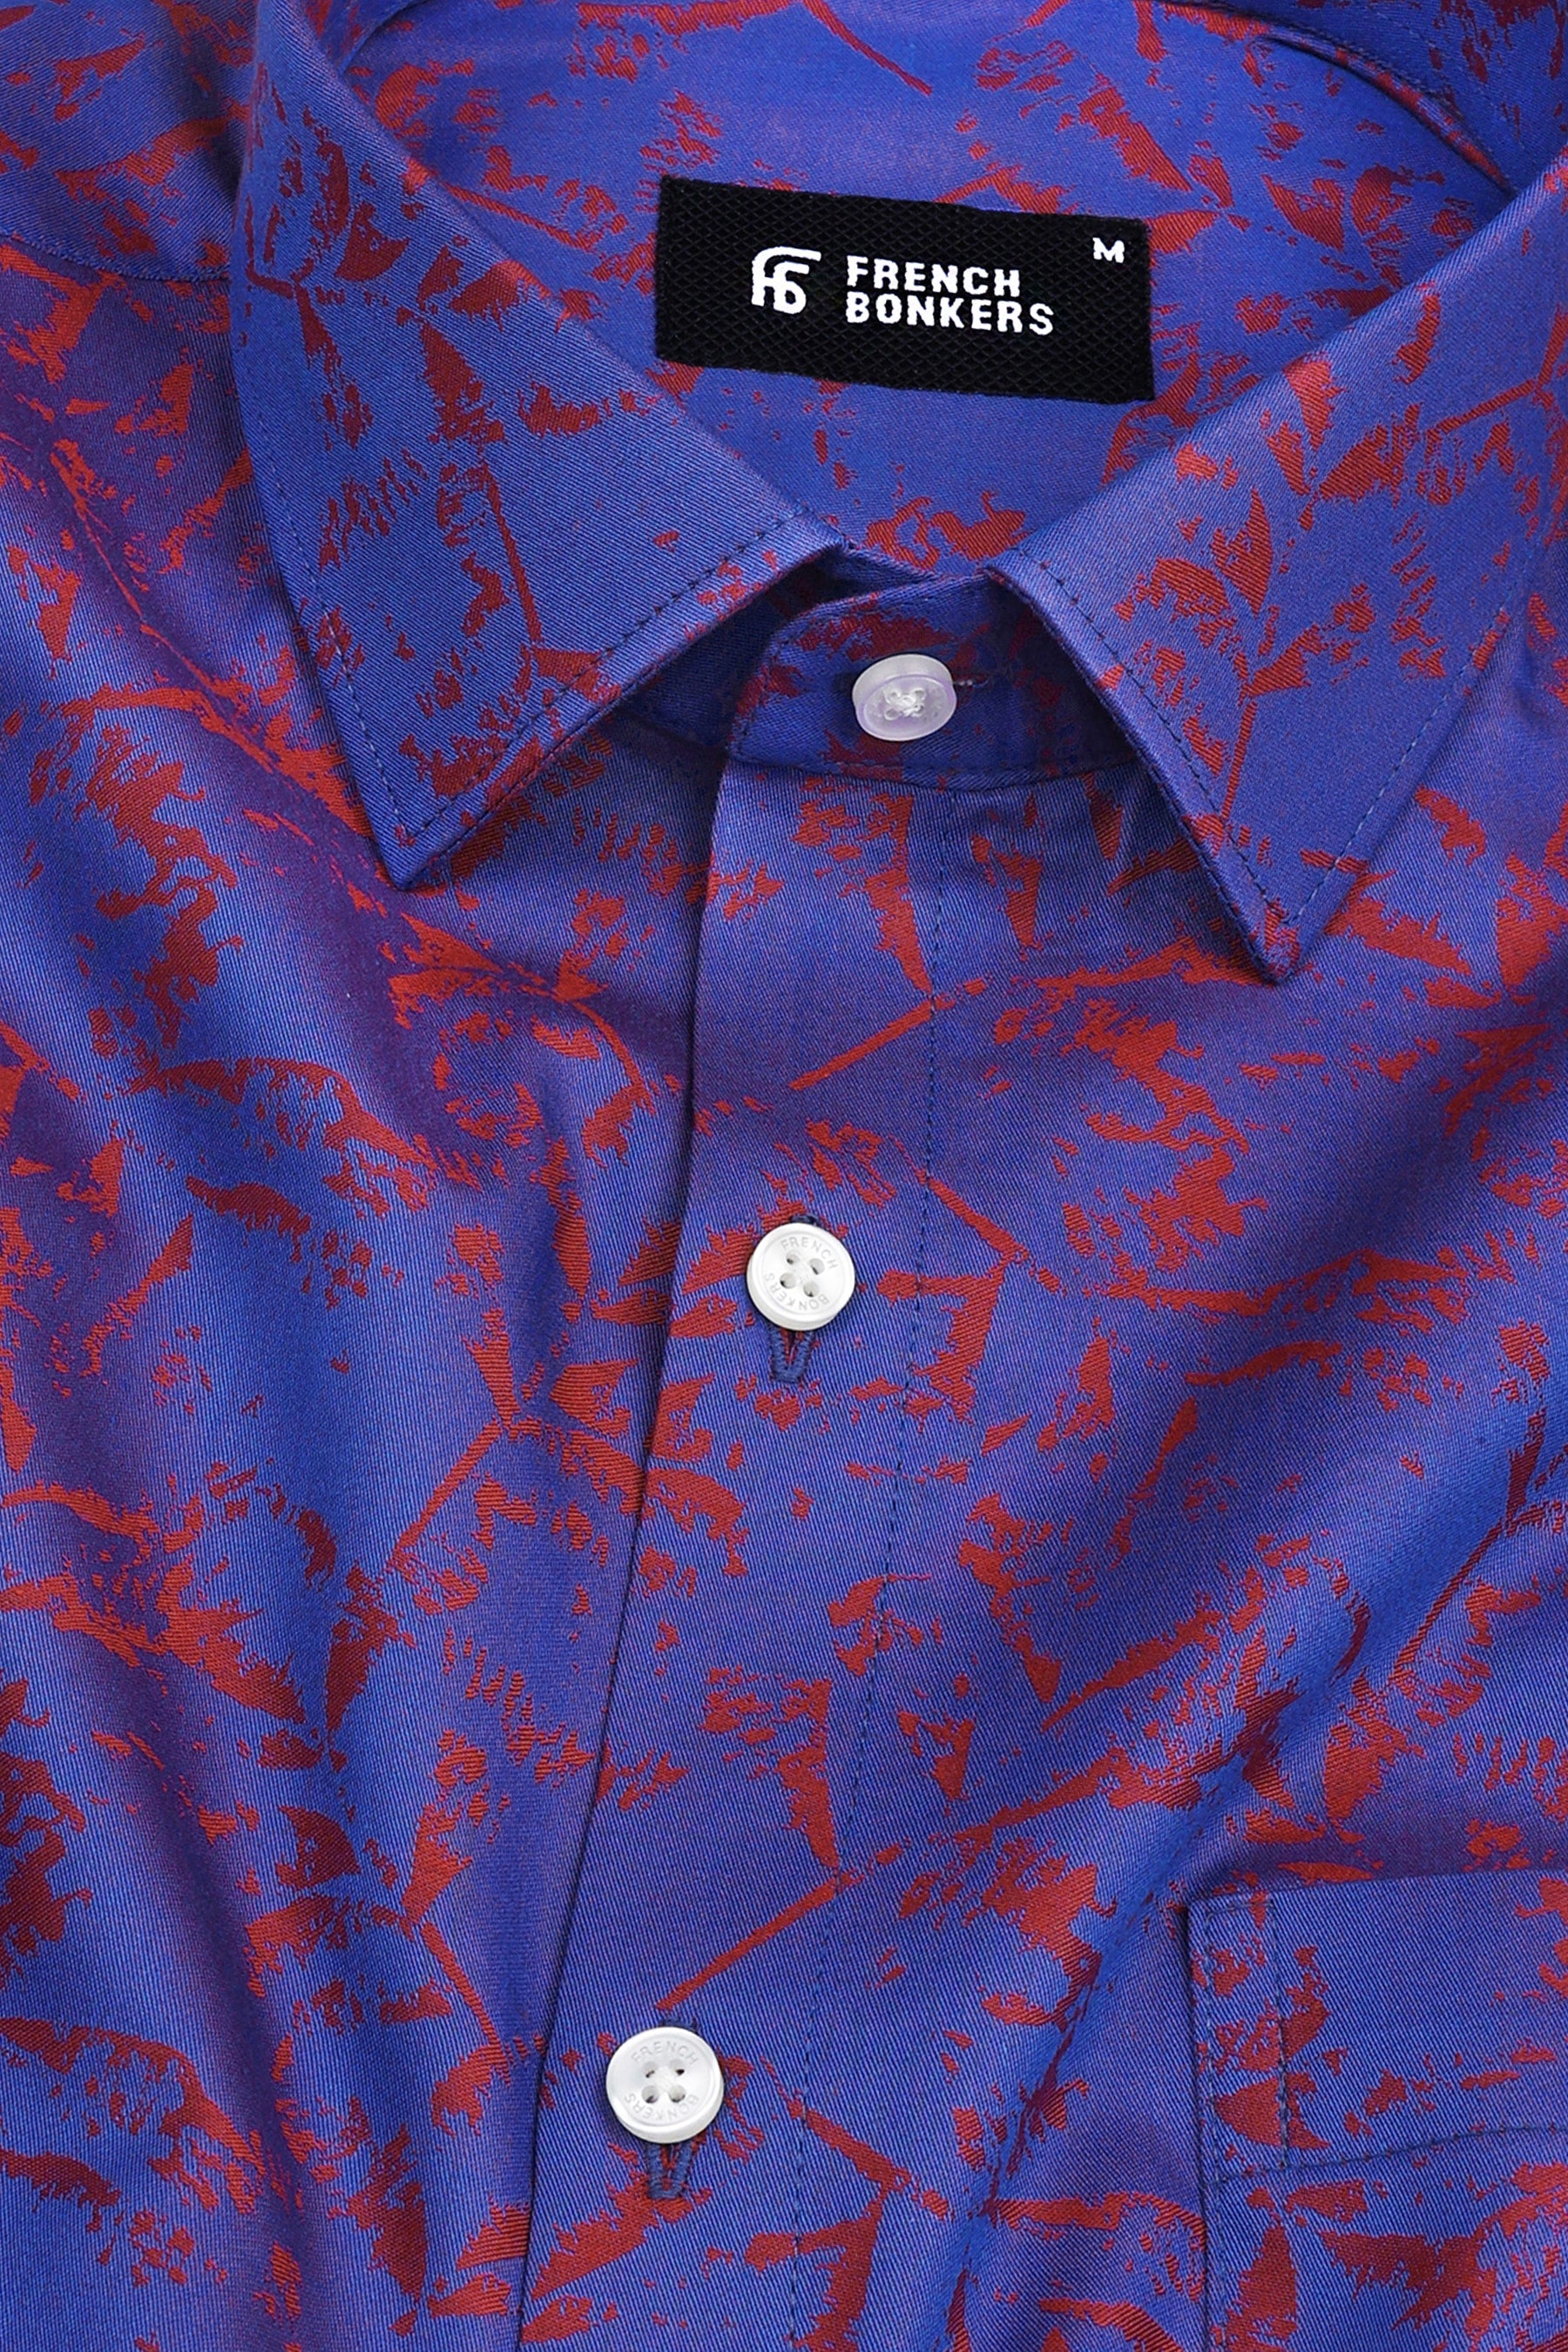 Royal blue and red jacquard printed shirt